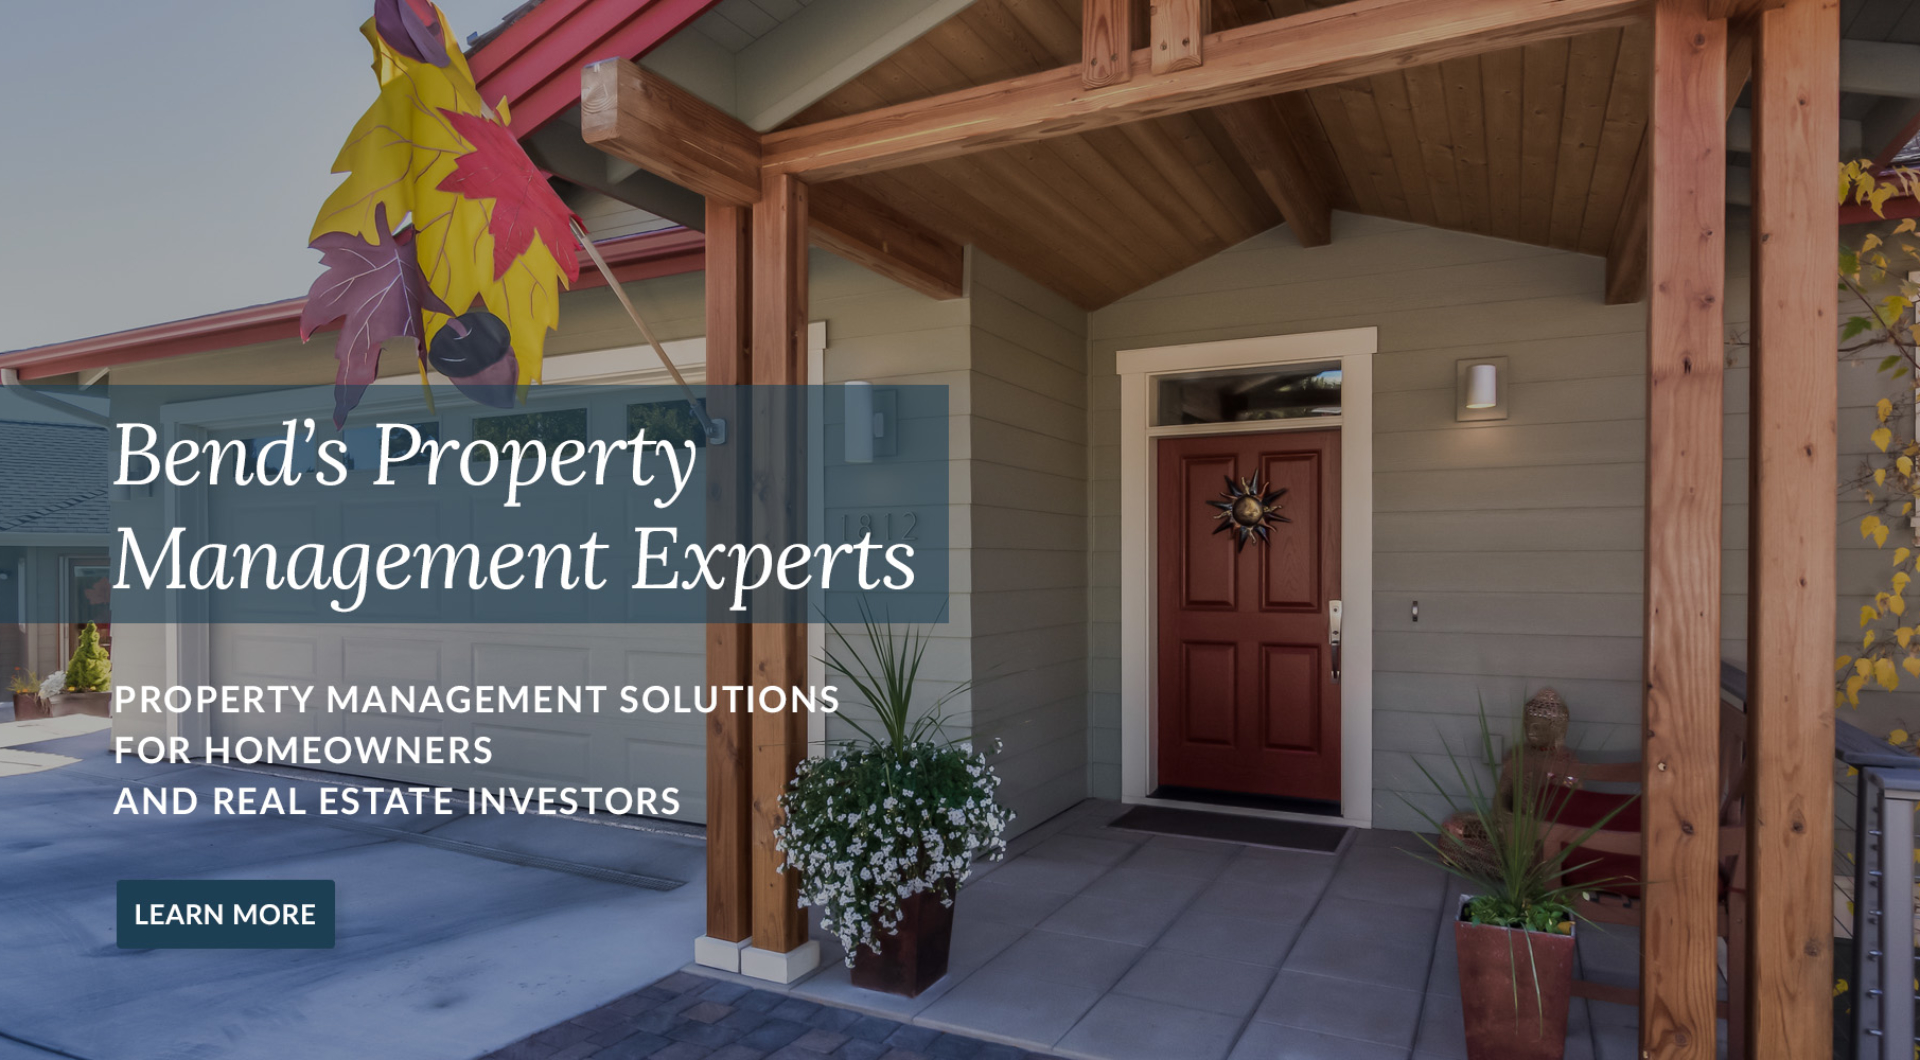 Property management for real estate investors